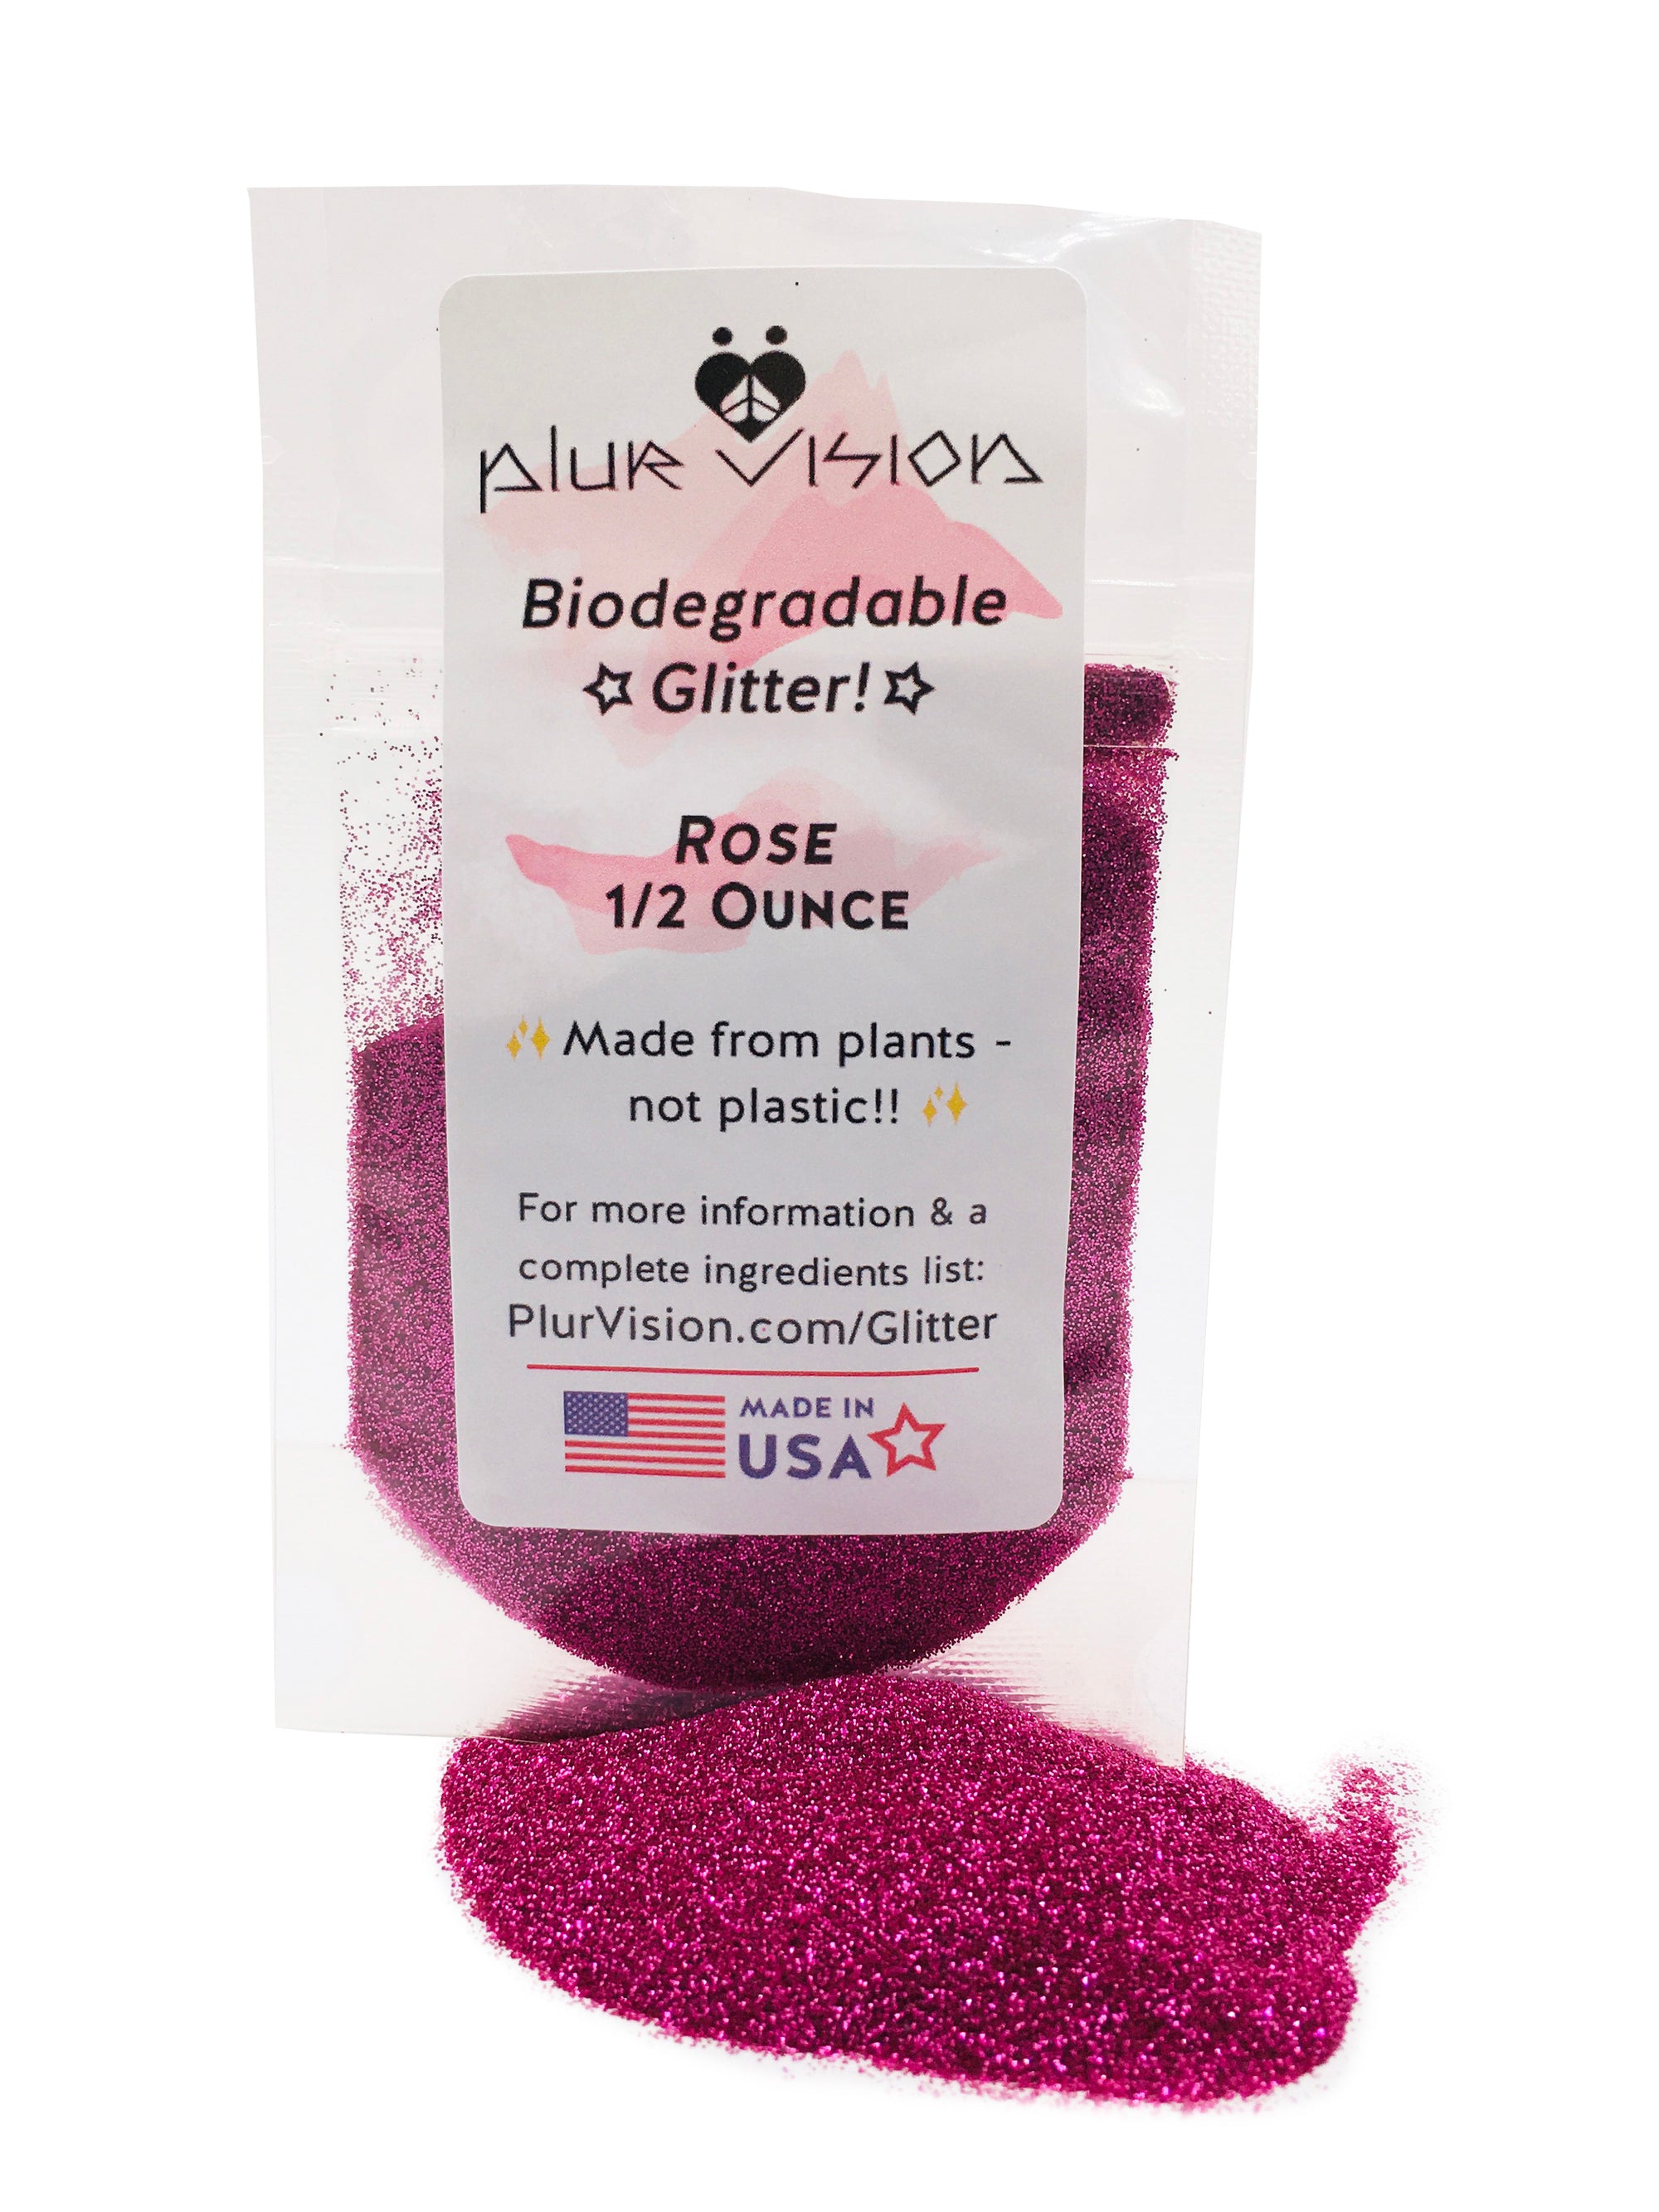 ✨ Rose Biodegradable Glitter! ✨